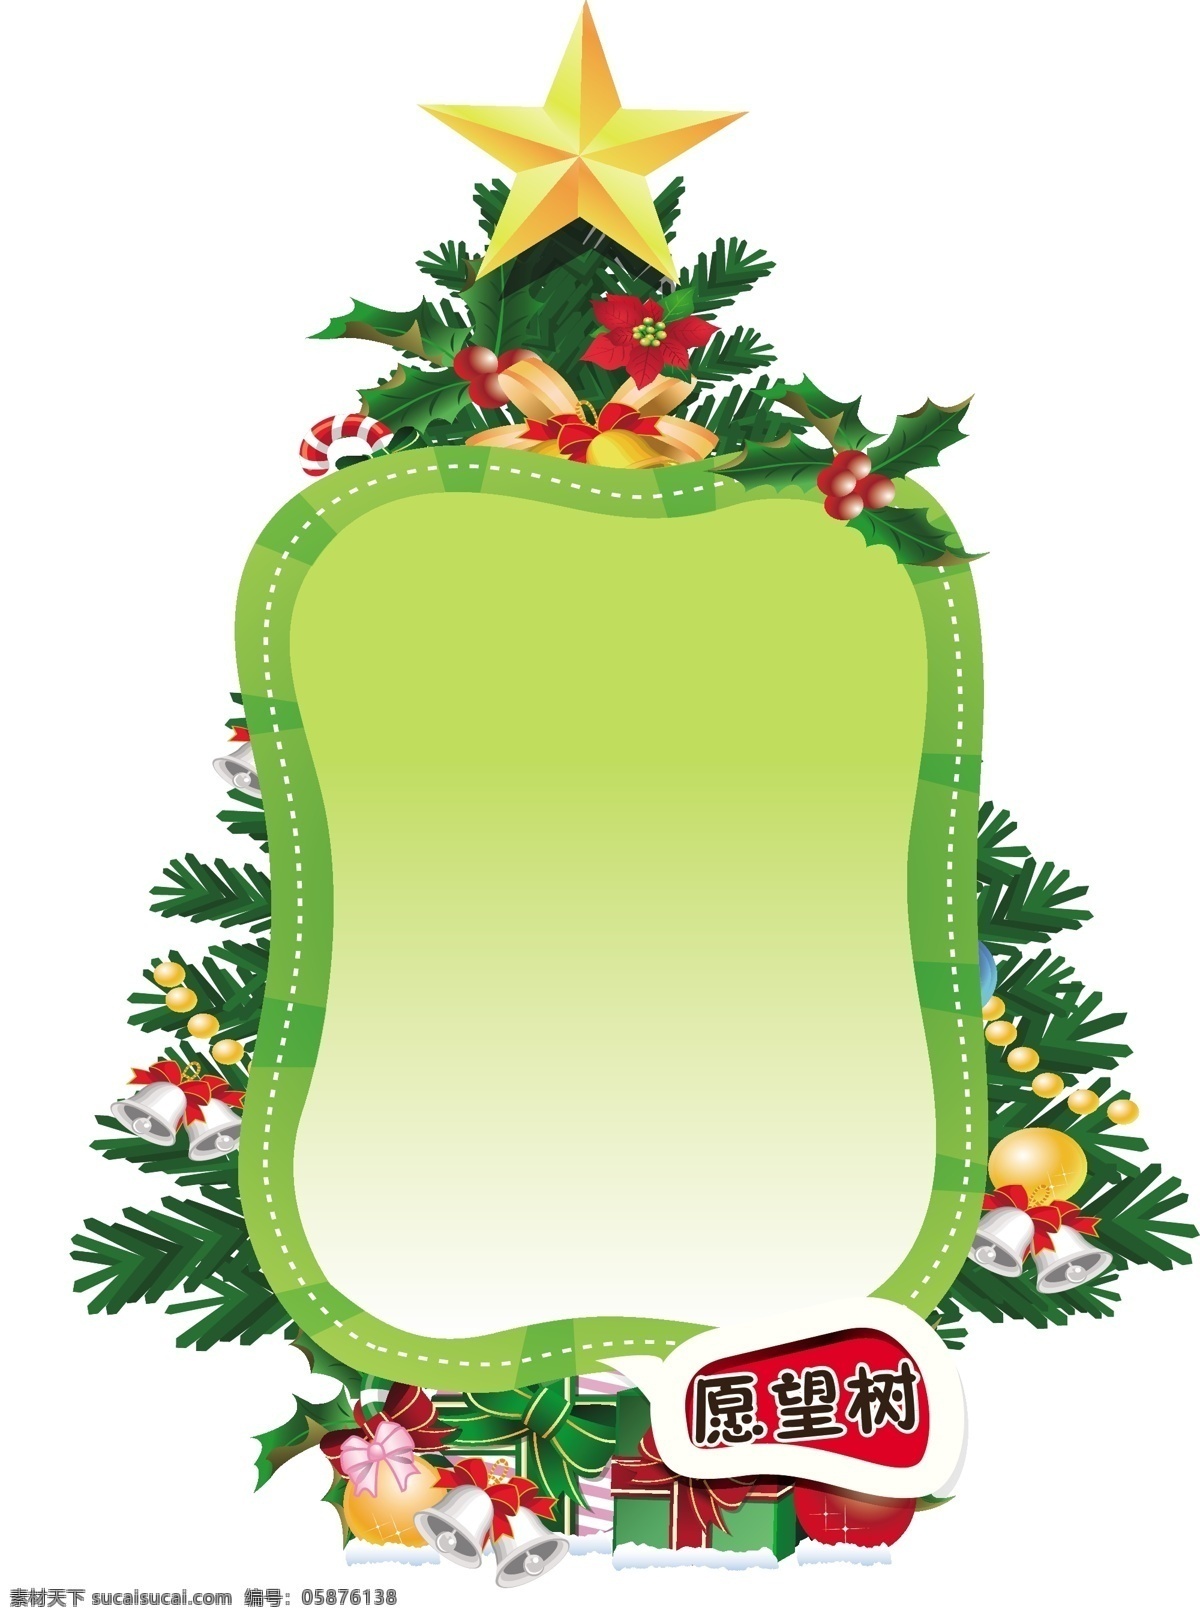 愿望 树 节日 促销 标签 心愿 许愿 标志 愿望树 圣诞愿望树